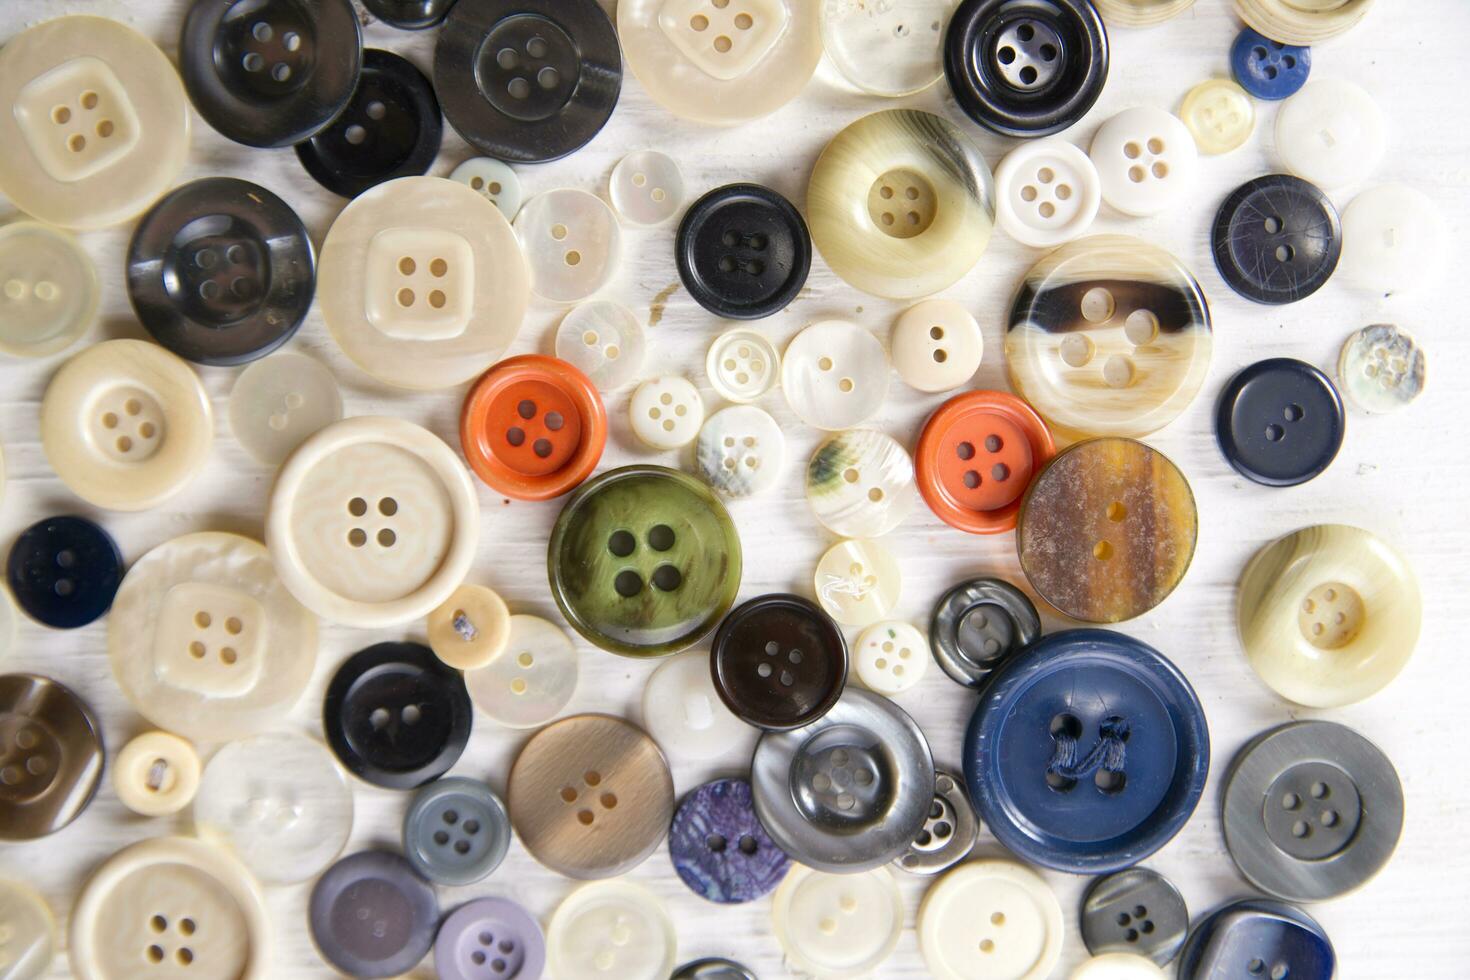 un pila de botones en un blanco mesa foto